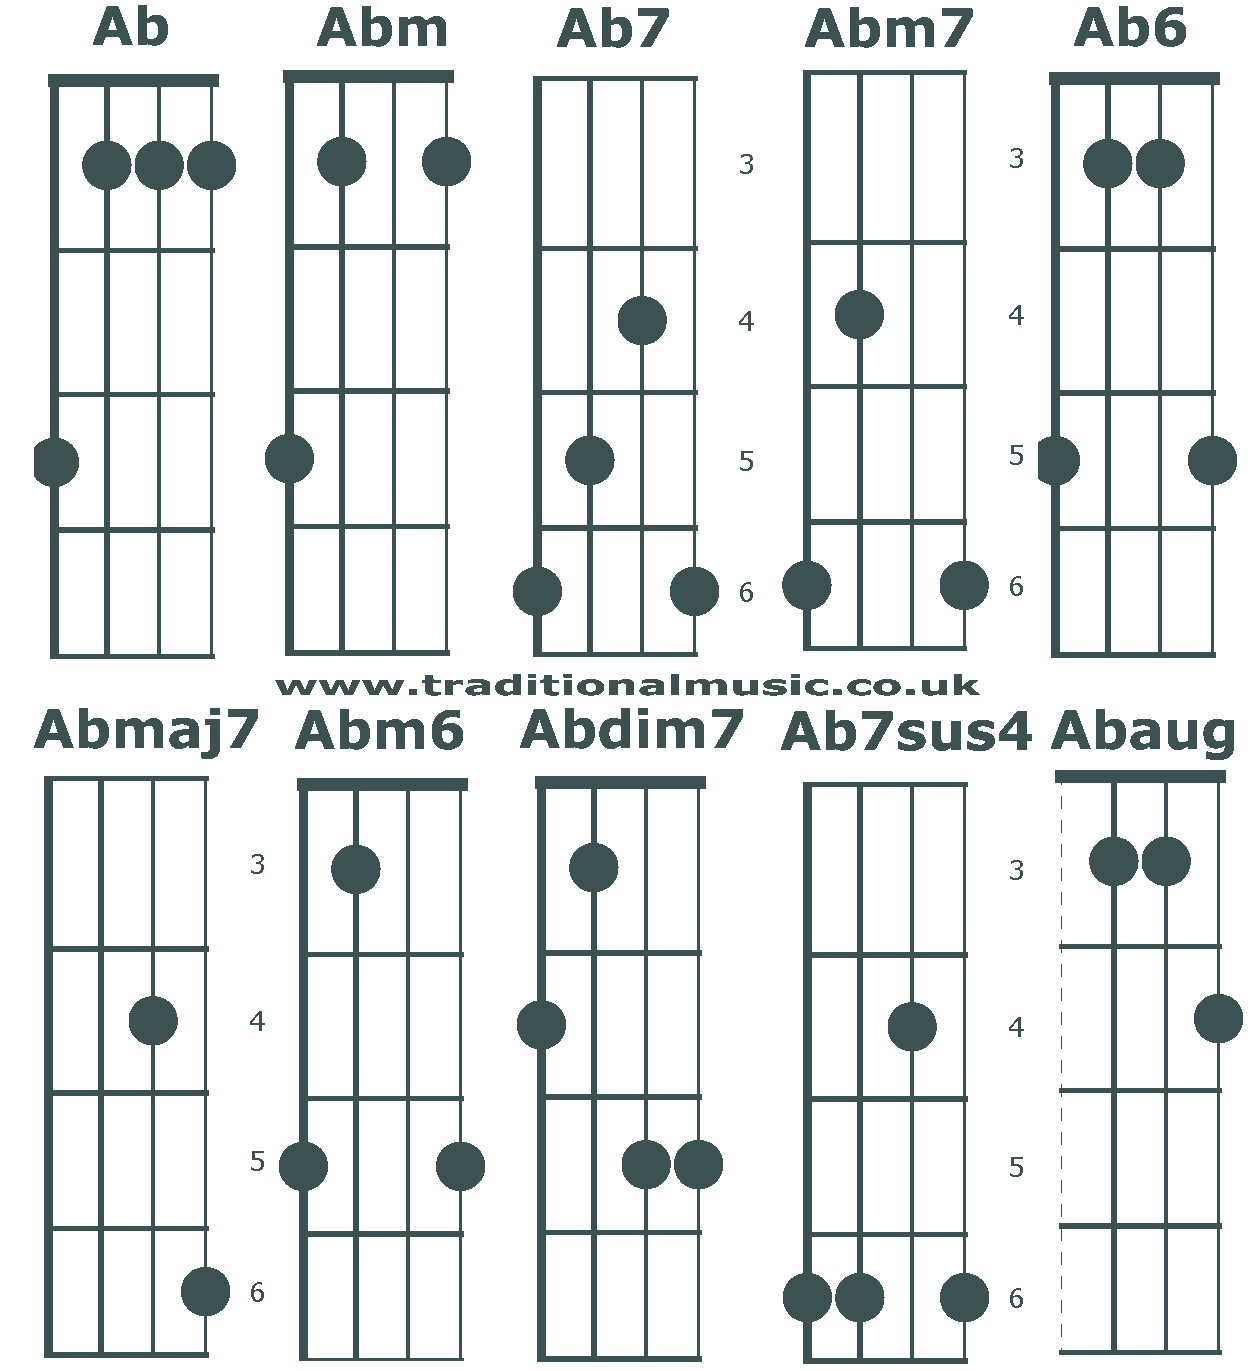 Banjo C tuning chords beginning Ab/G#